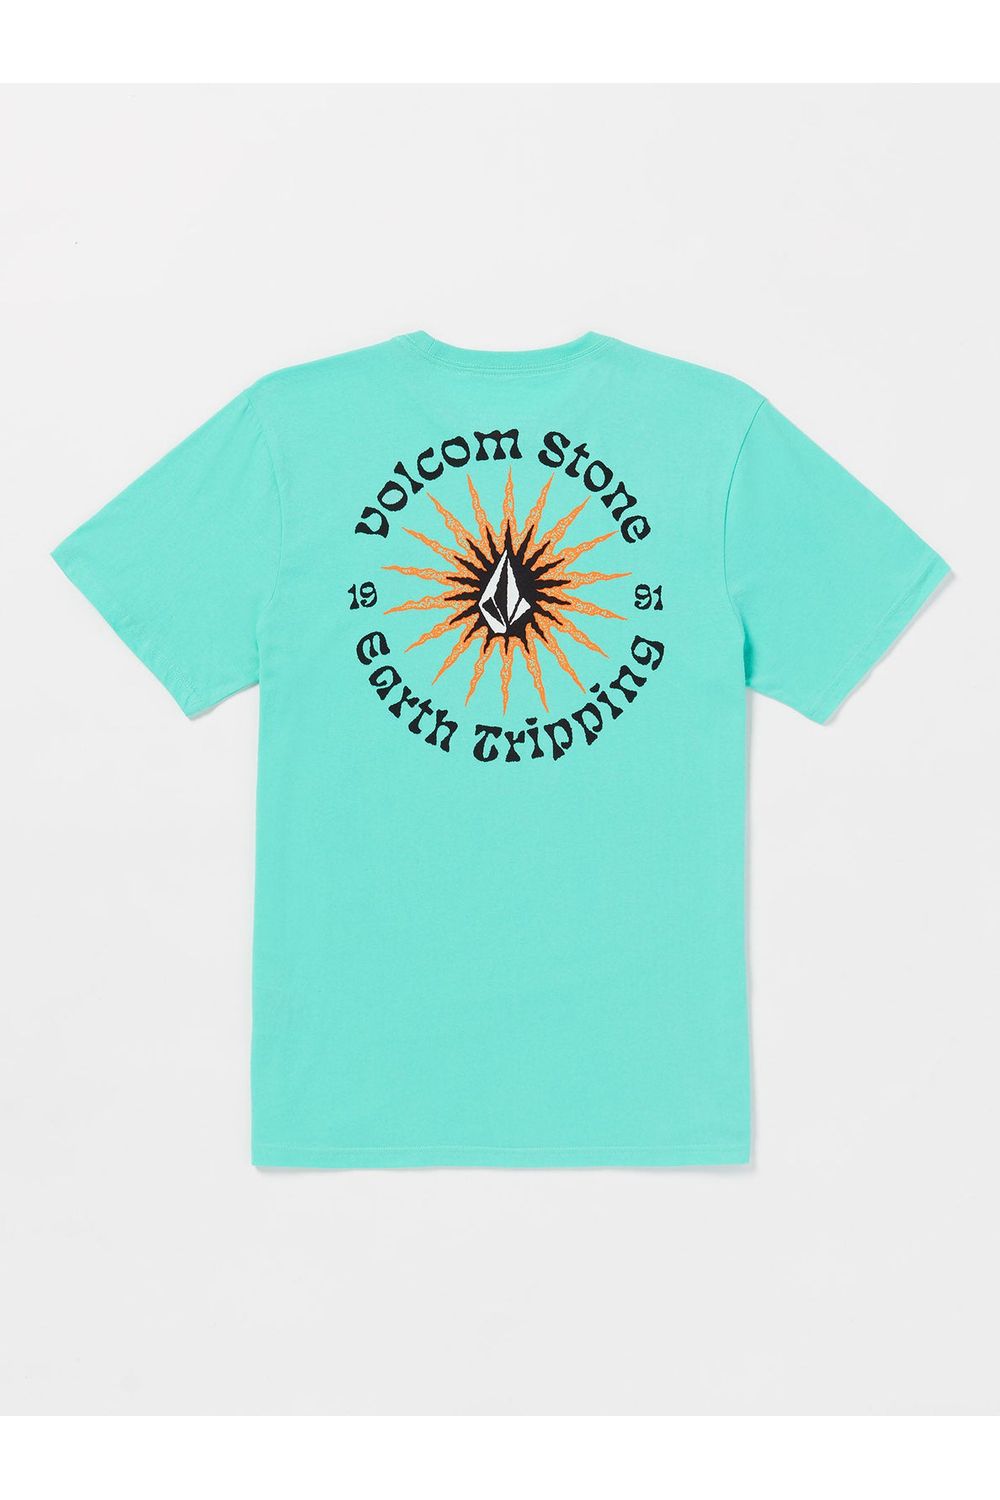 Volcom Scorcho Fty Short Sleeve T-Shirt Dusty Aqua